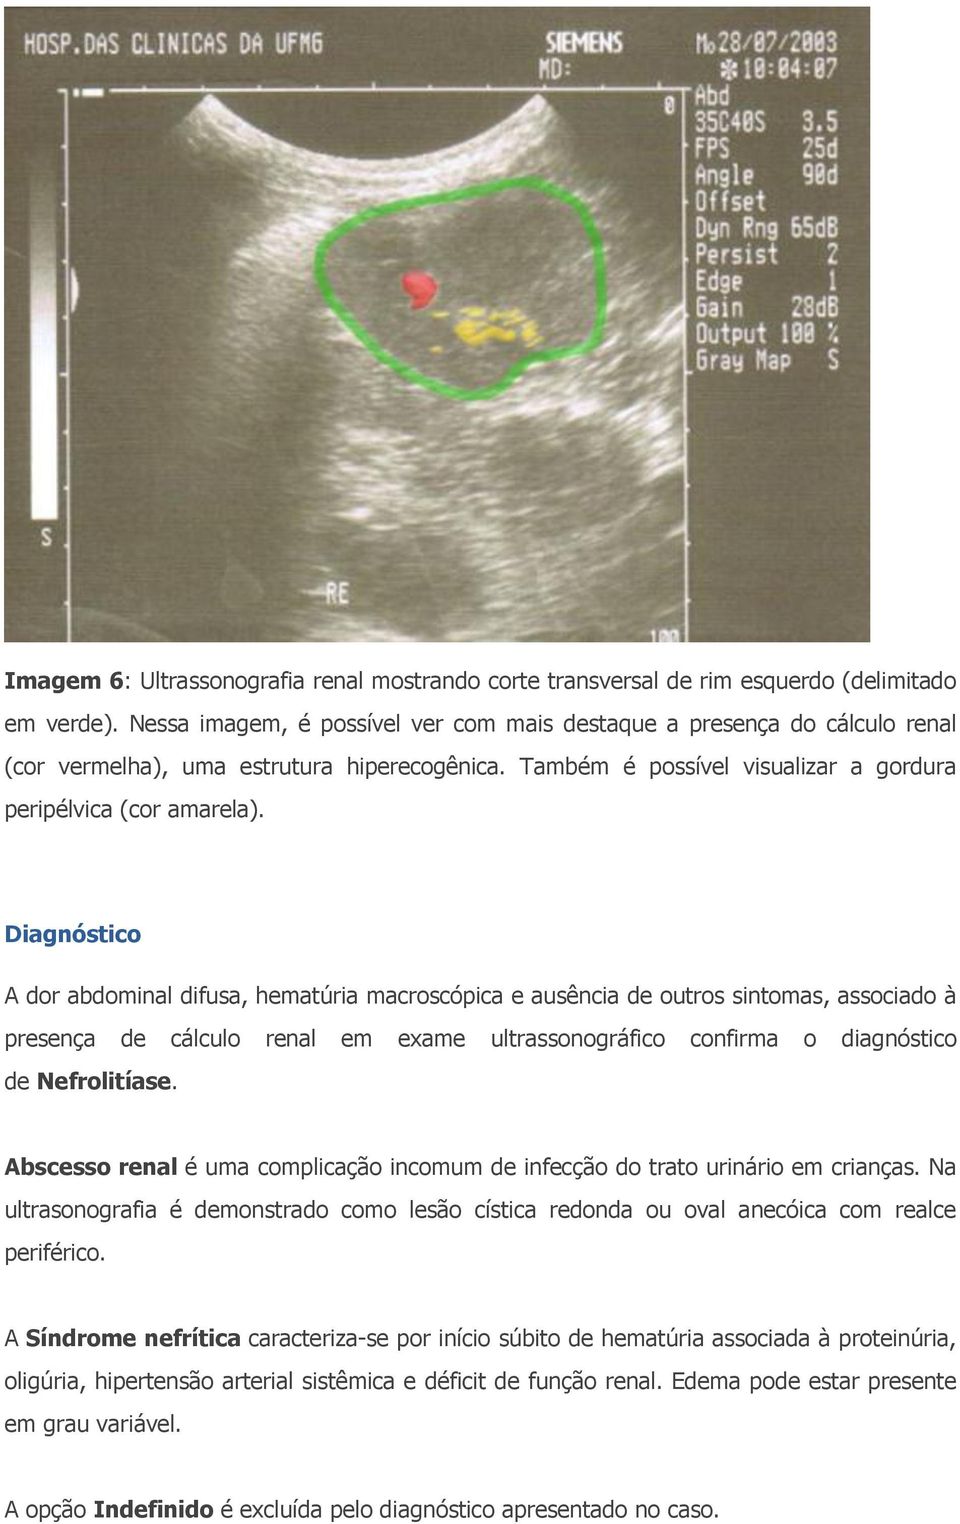 Diagnóstico A dor abdominal difusa, hematúria macroscópica e ausência de outros sintomas, associado à presença de cálculo renal em exame ultrassonográfico confirma o diagnóstico de Nefrolitíase.